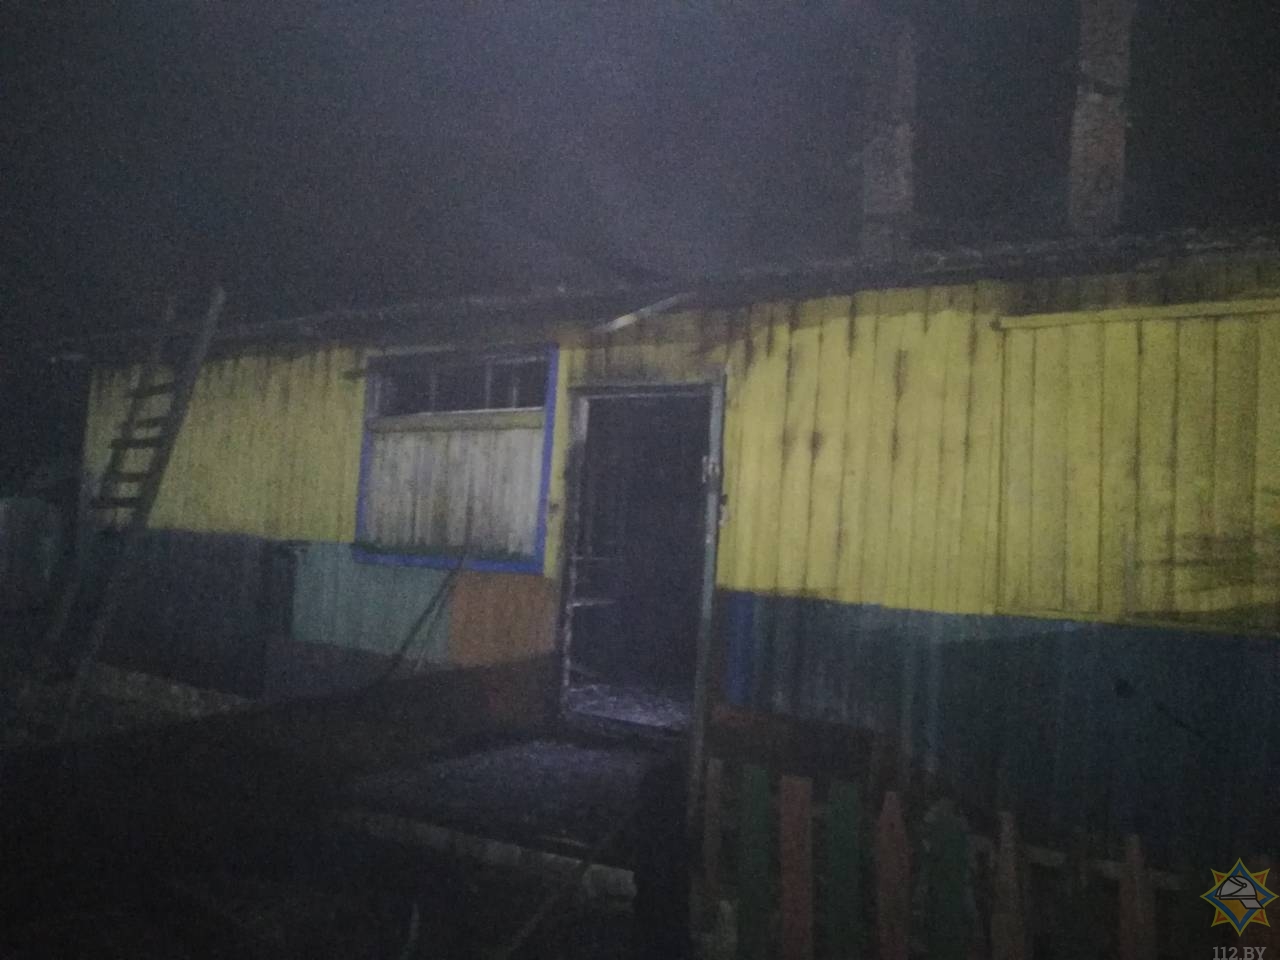 Пенсионер и доярка погибли на пожаре в Быховском районе